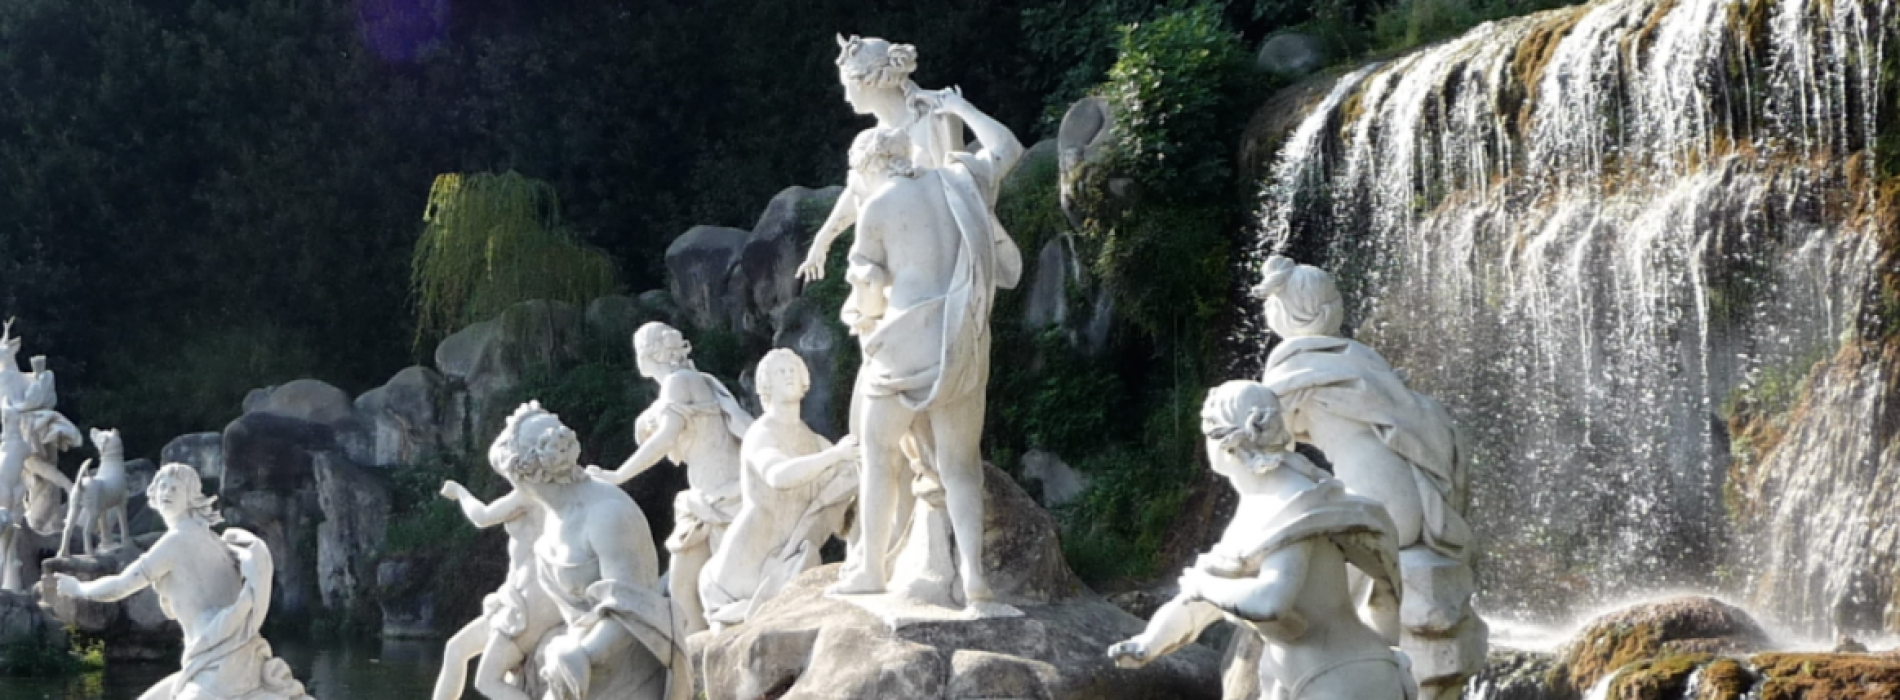 Reggia. “Musica & Mito” nelle sculture del Parco Reale